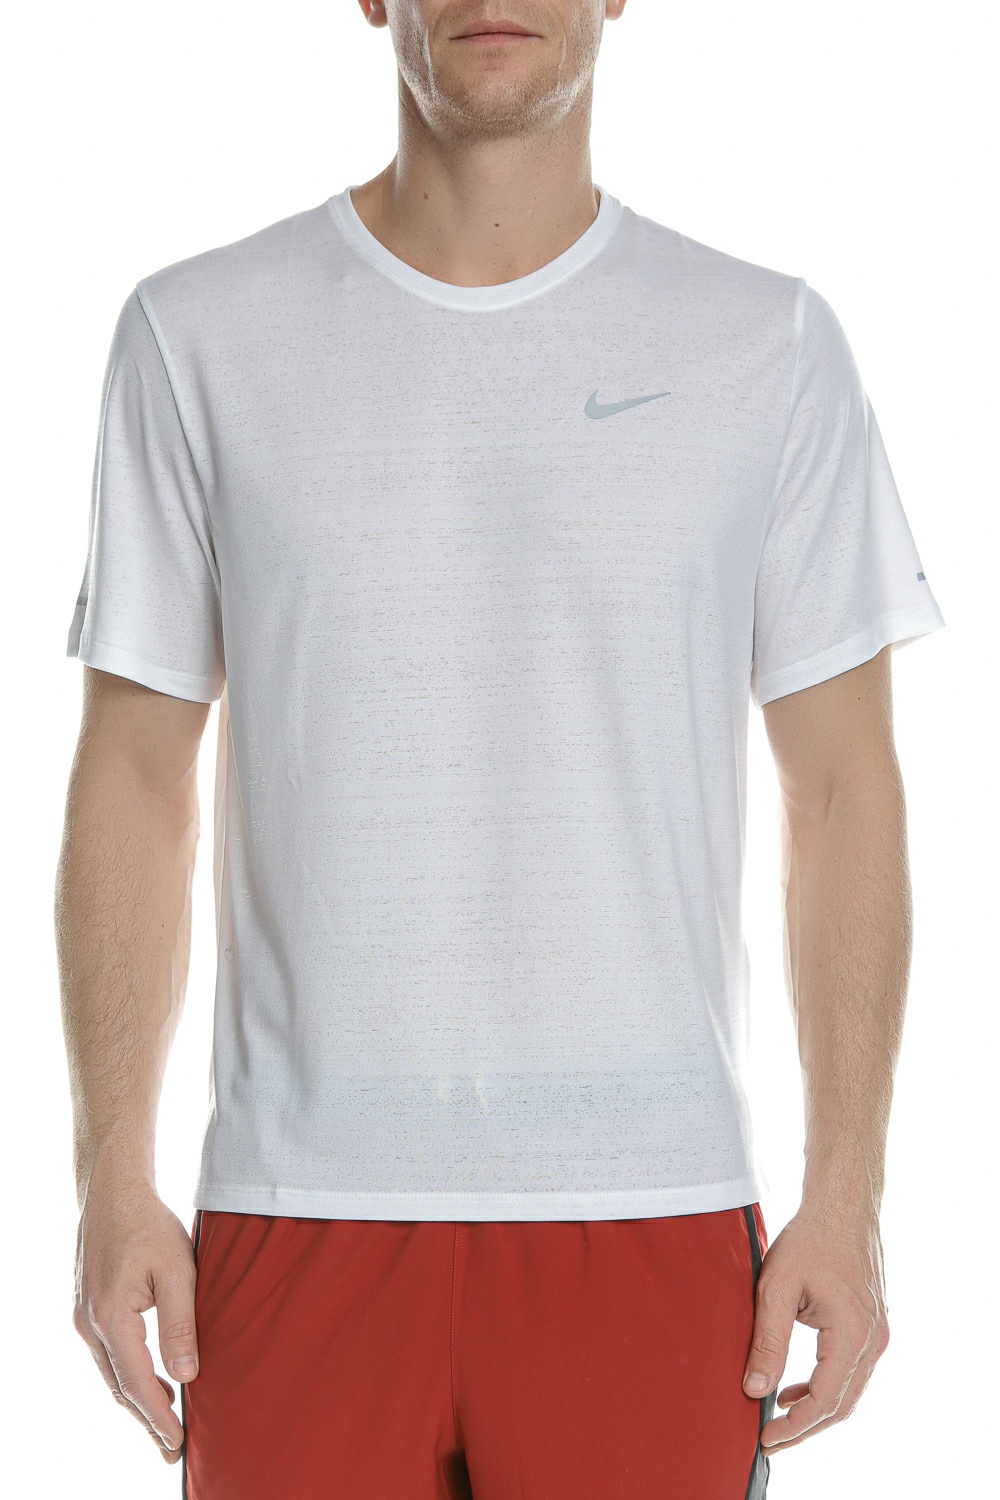 Ανδρικά/Ρούχα/Αθλητικά/T-shirt NIKE - Ανδρική μπλούζα NIKE DF MILER TOP SS λευκή